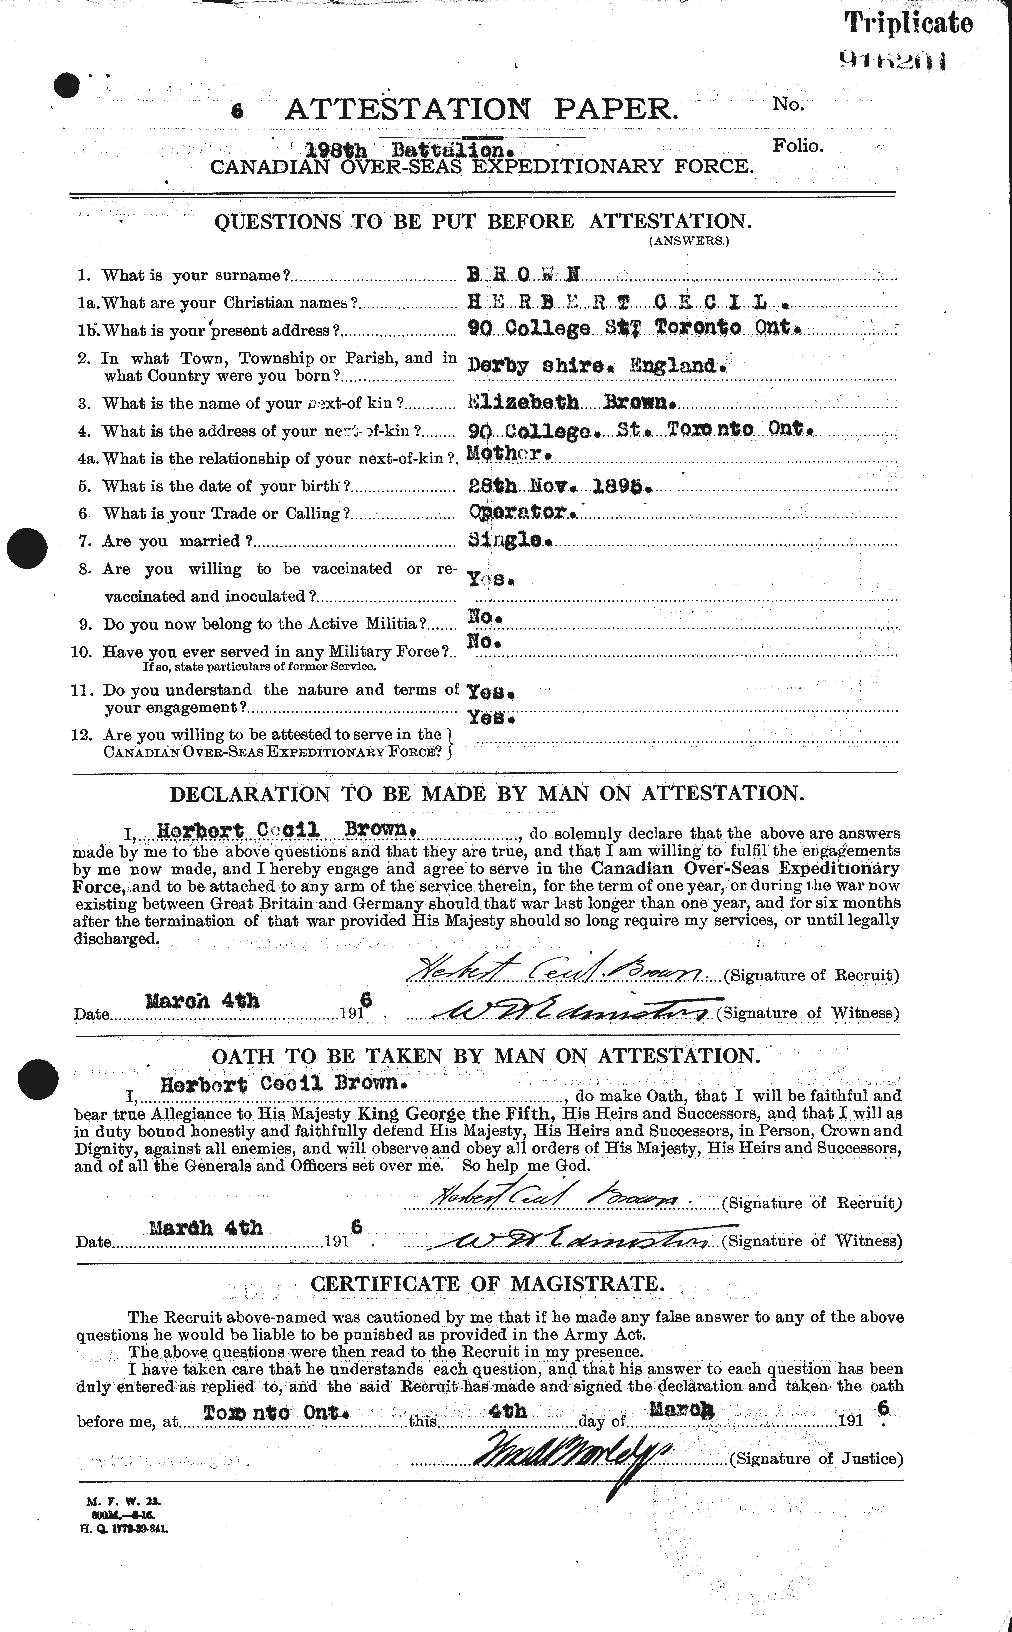 Dossiers du Personnel de la Première Guerre mondiale - CEC 265564a